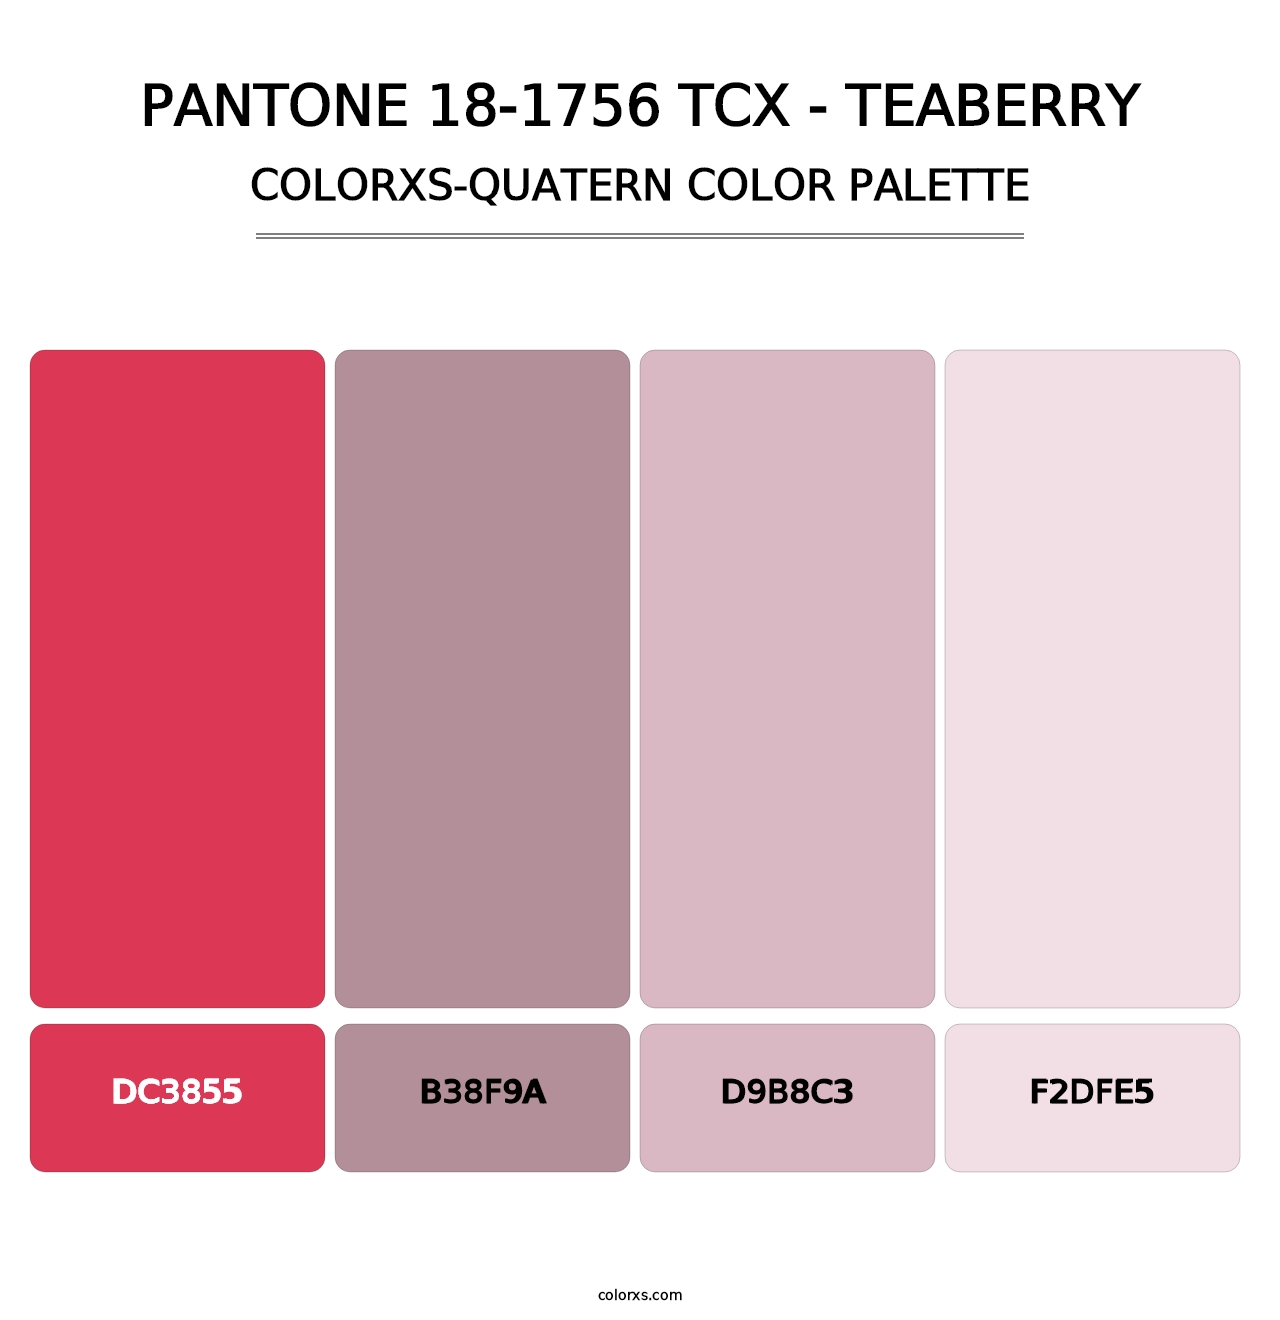 PANTONE 18-1756 TCX - Teaberry - Colorxs Quatern Palette